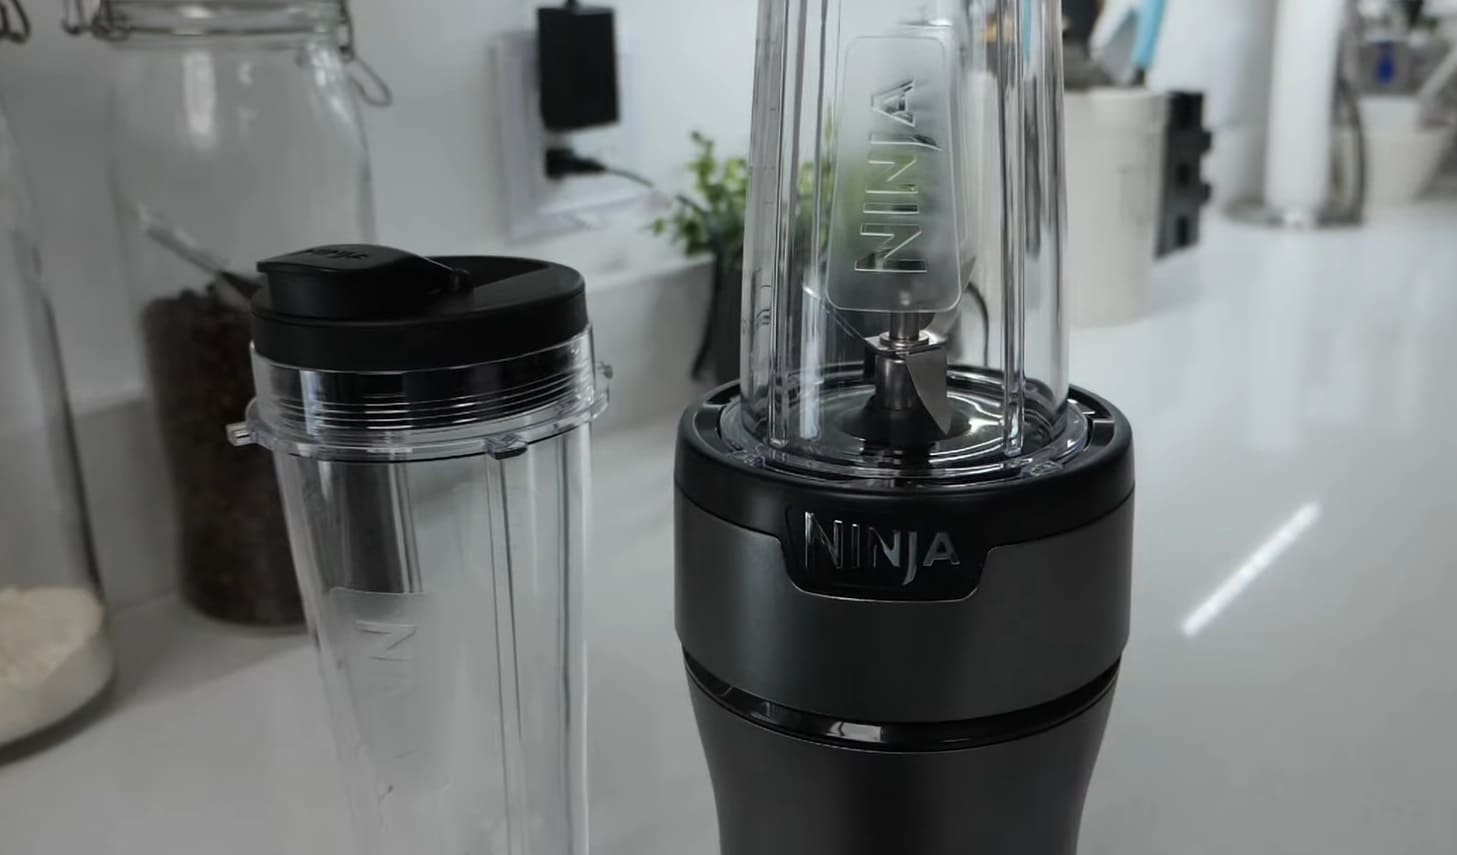 Ninja Blender Burning Smell: What to Do?